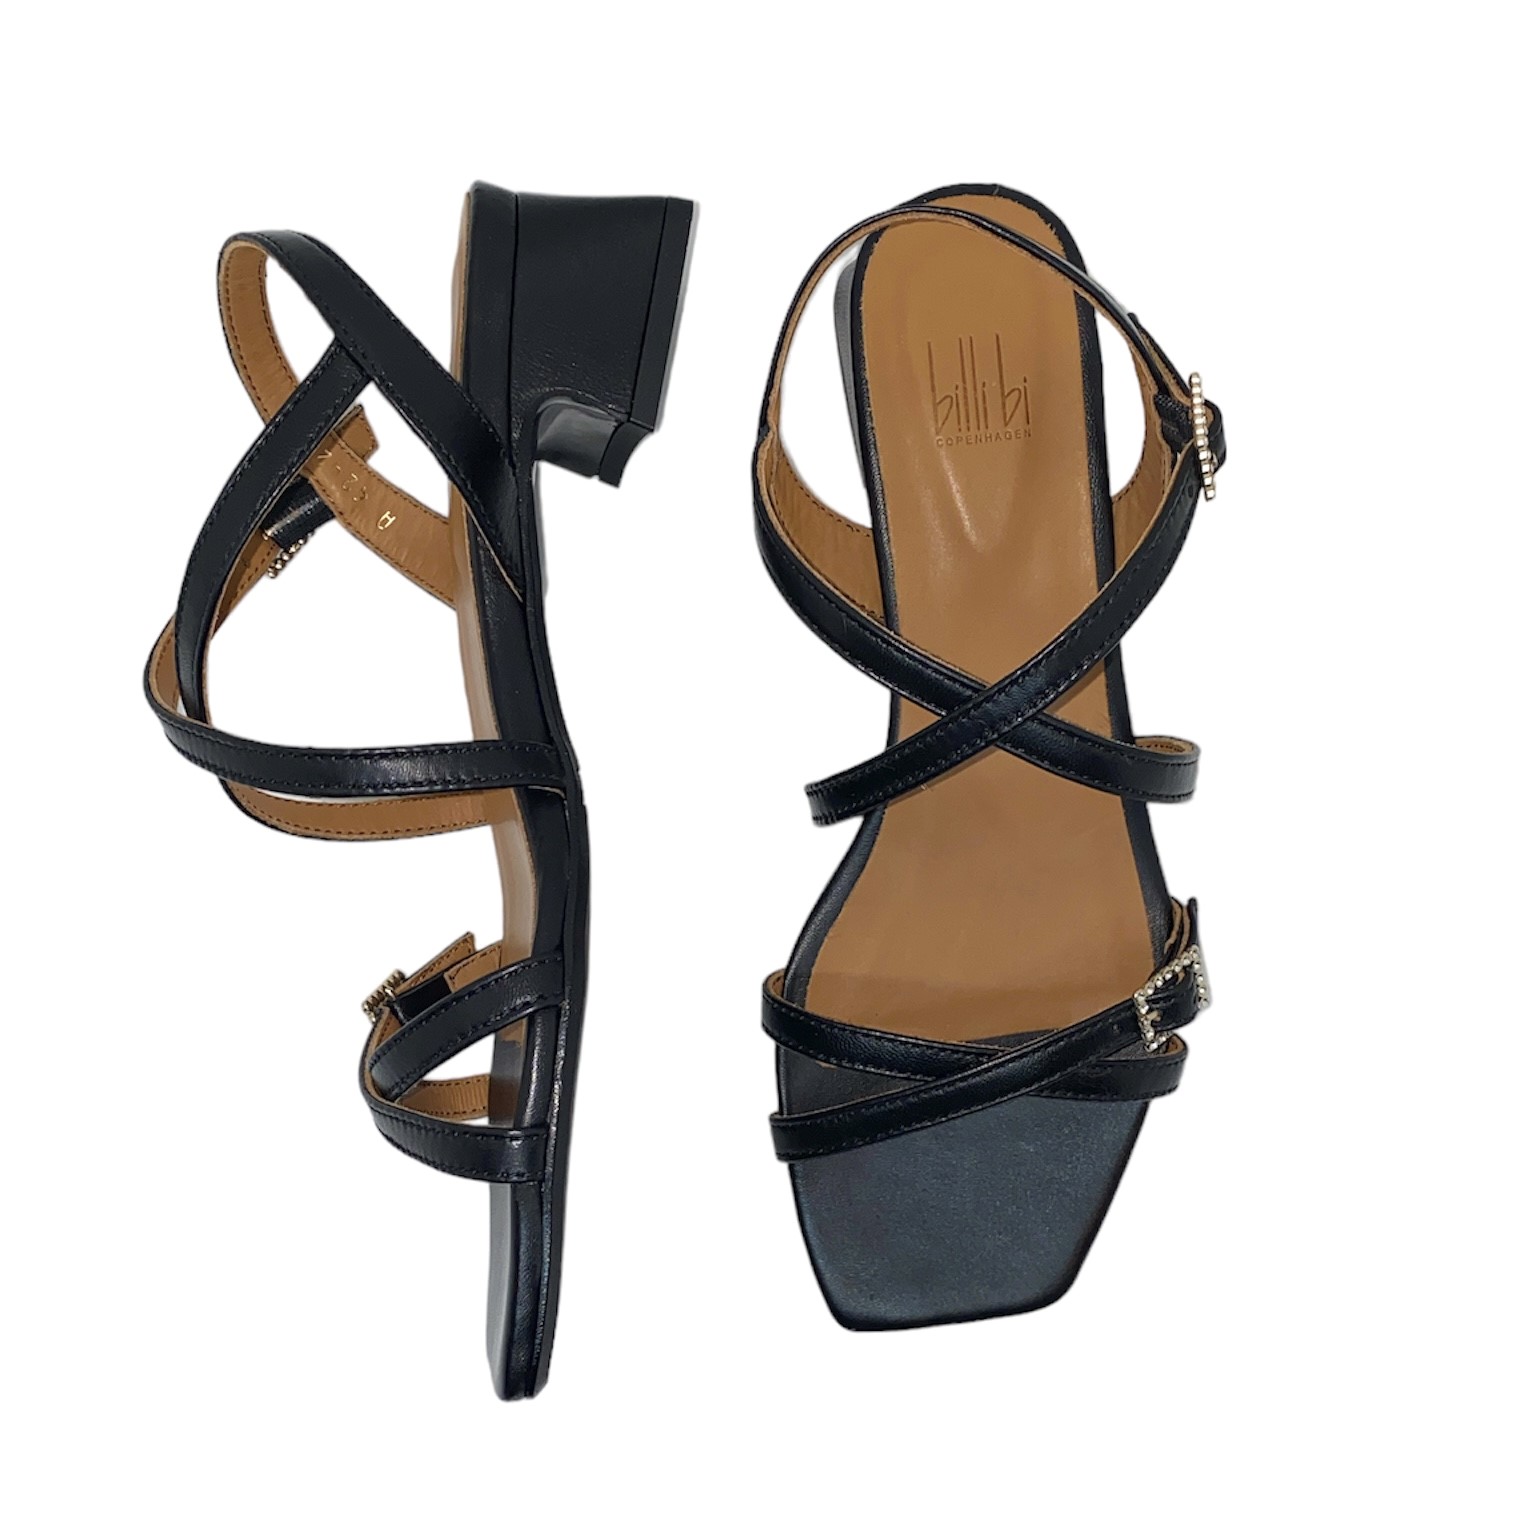 Billi Bi - Sandal i sort tynde og moderat hæl - - BILLI BI - Como Shoes